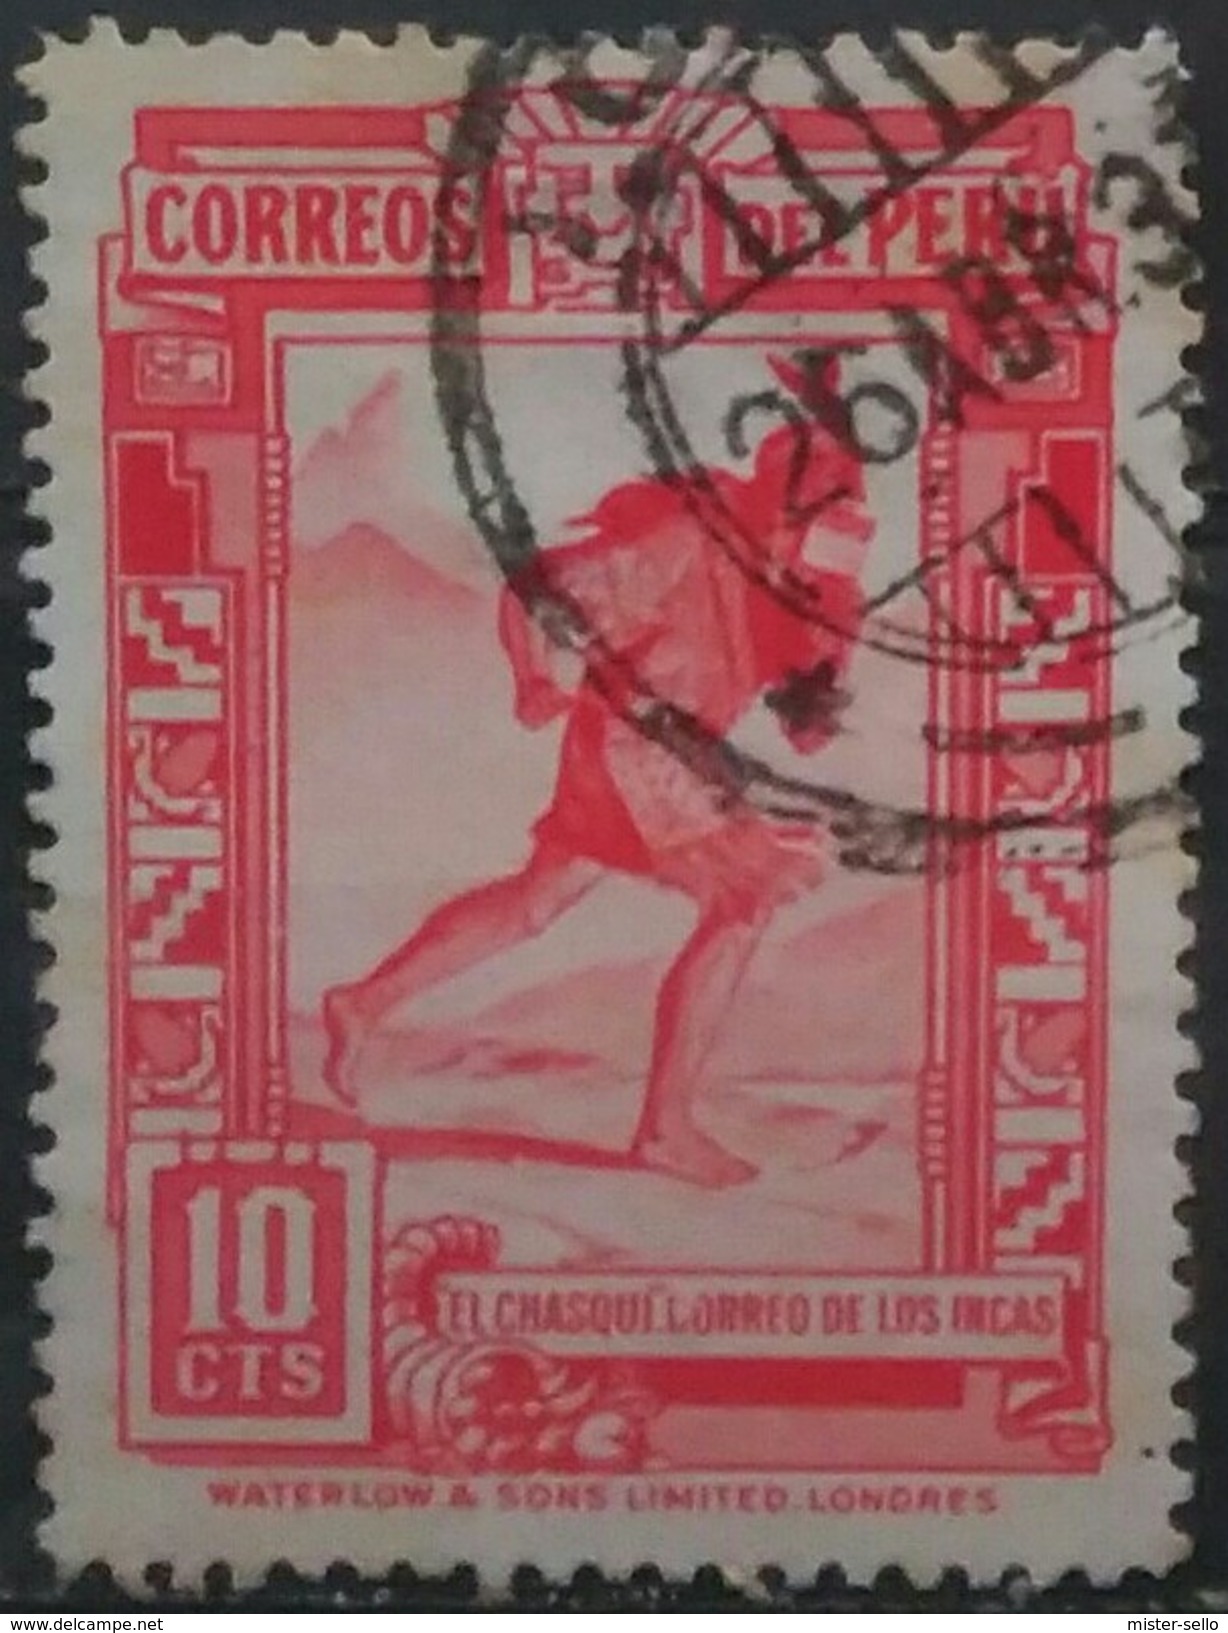 PERÚ 1936 Correo Inca. USADO - USED. - Peru